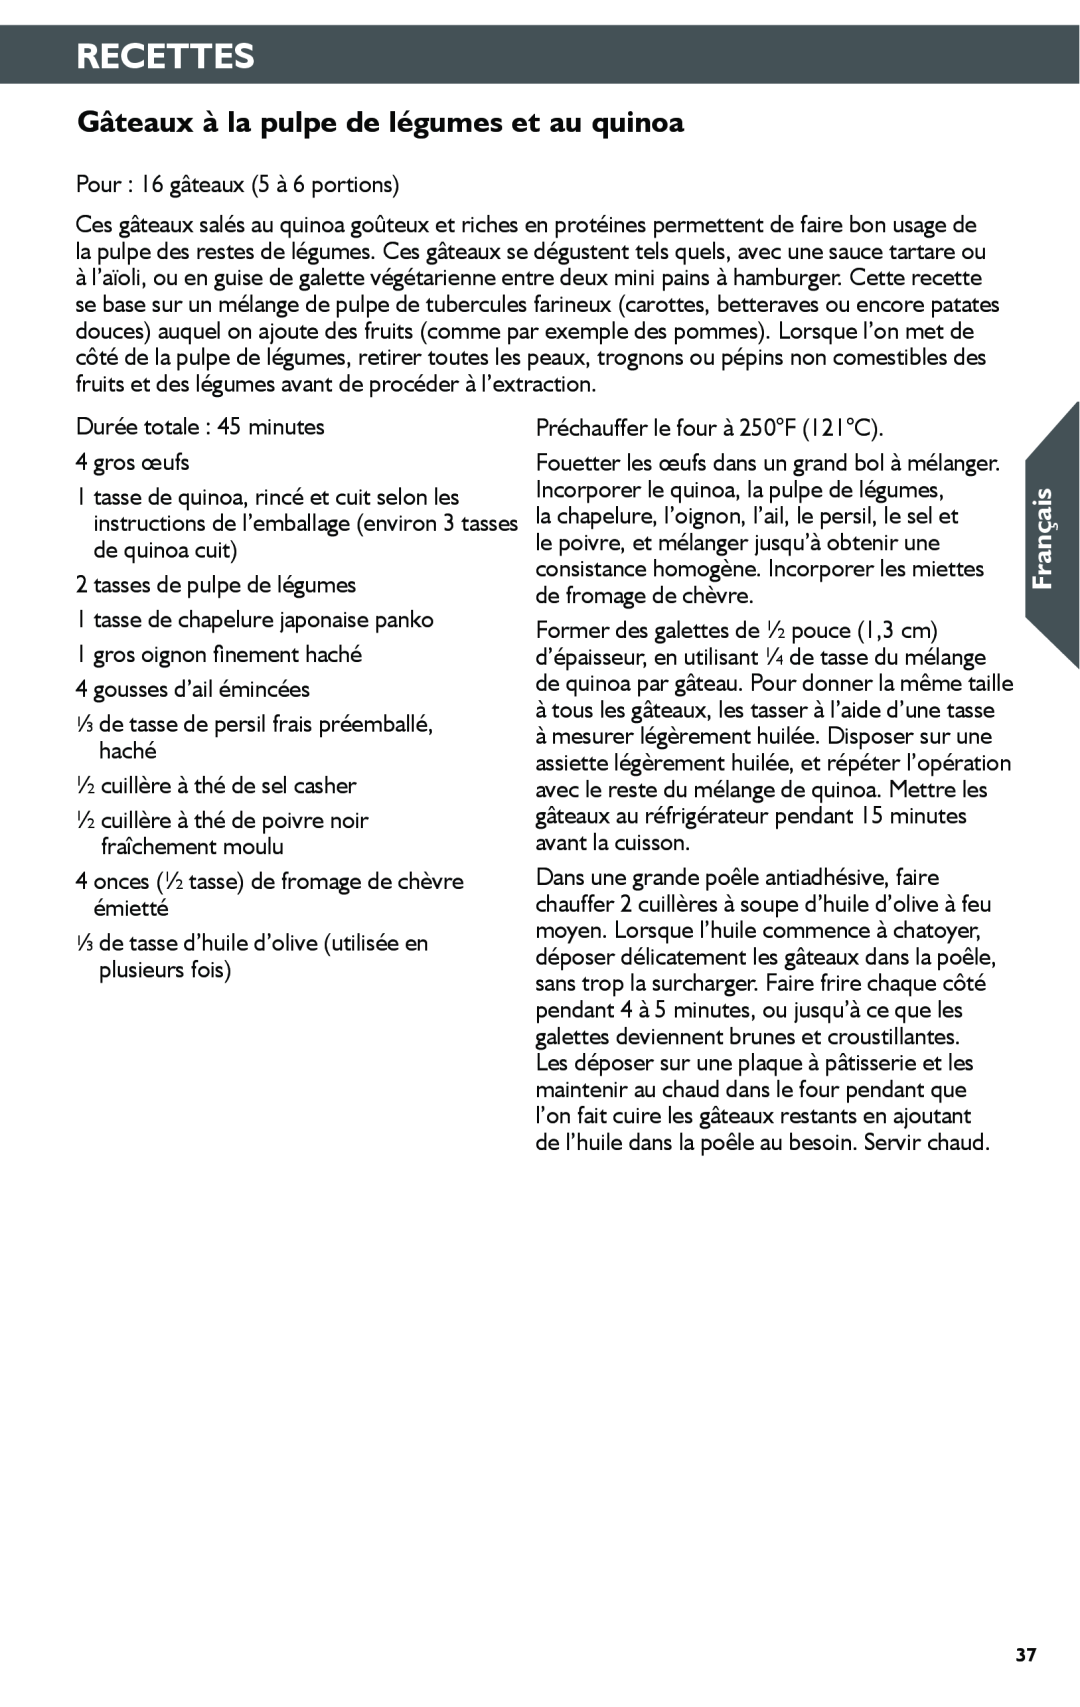 KitchenAid KSN1JA manual Gâteaux à la pulpe de légumes et au quinoa, Recettes, Français 